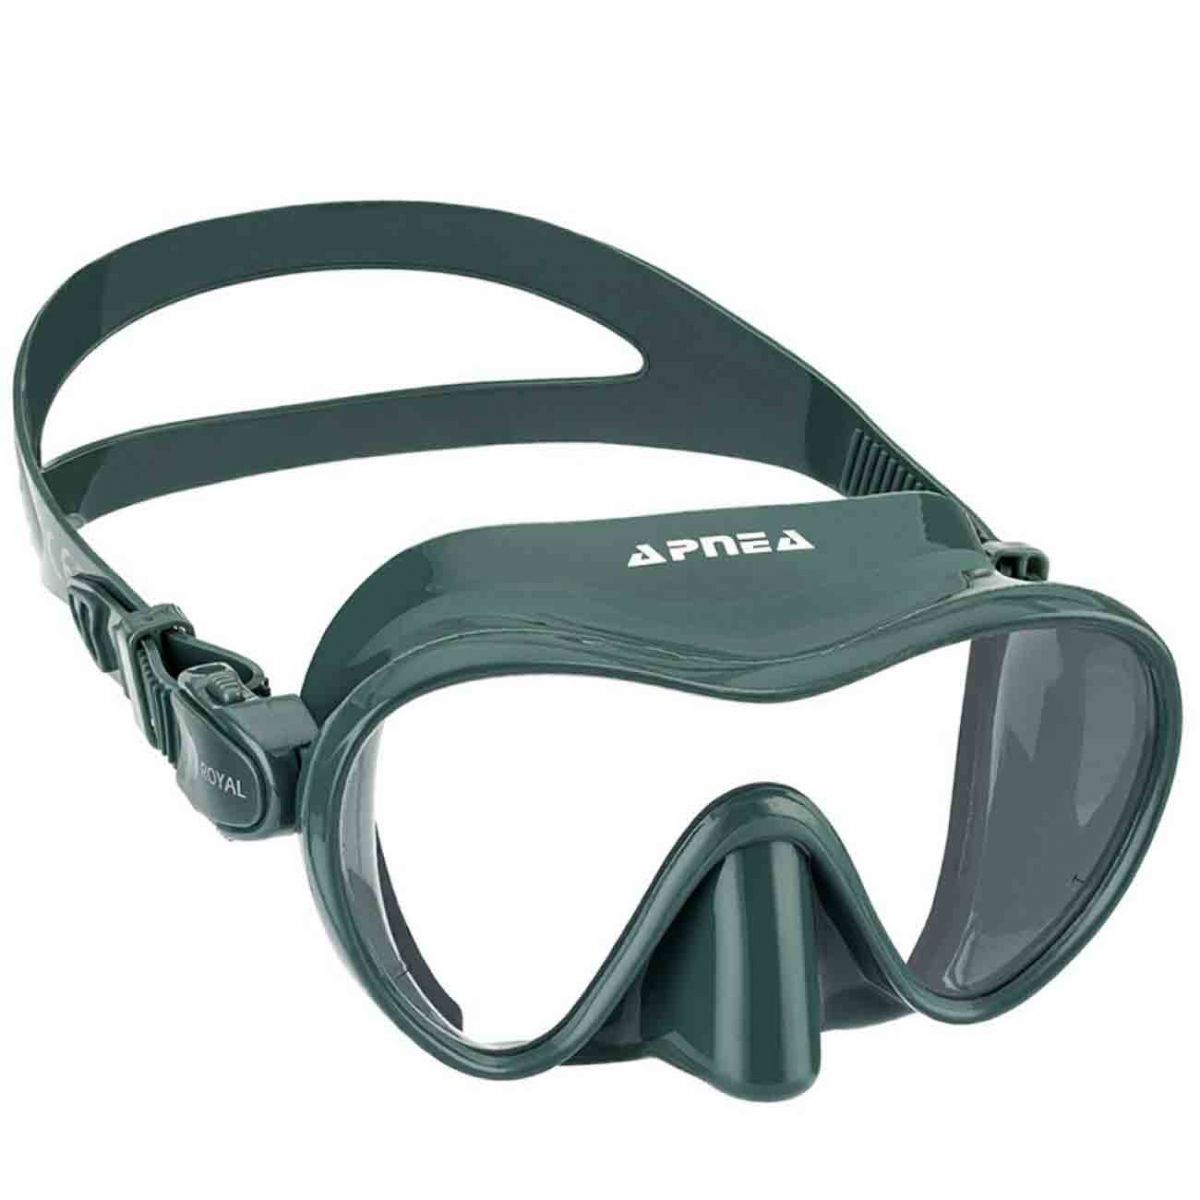 Apnea Royal Yeşil Dalış Gözlüğü,Apnea kalitesinde uzun yıllar kullanabileceğiniz yeşil renk dalış gözlüğü